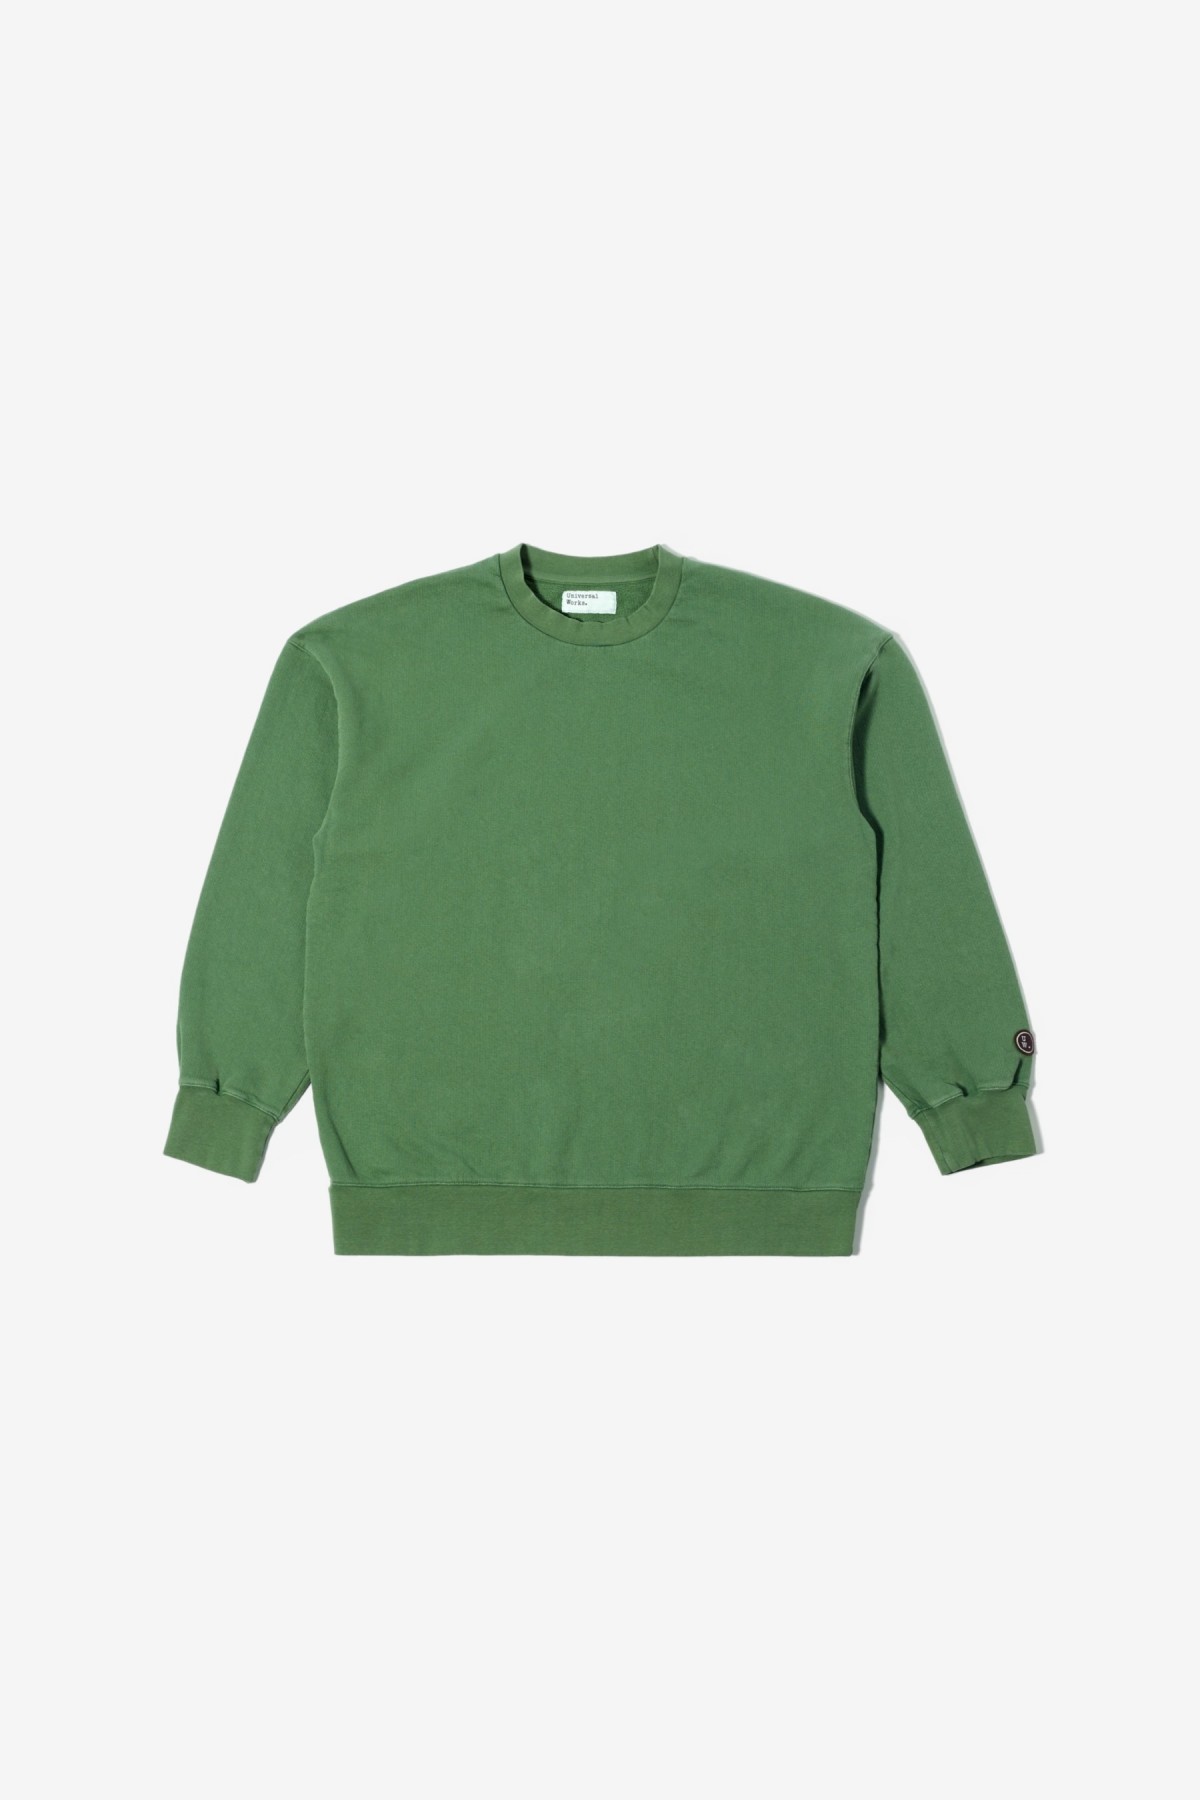 Universal Works Loose Sweatshirt in Green